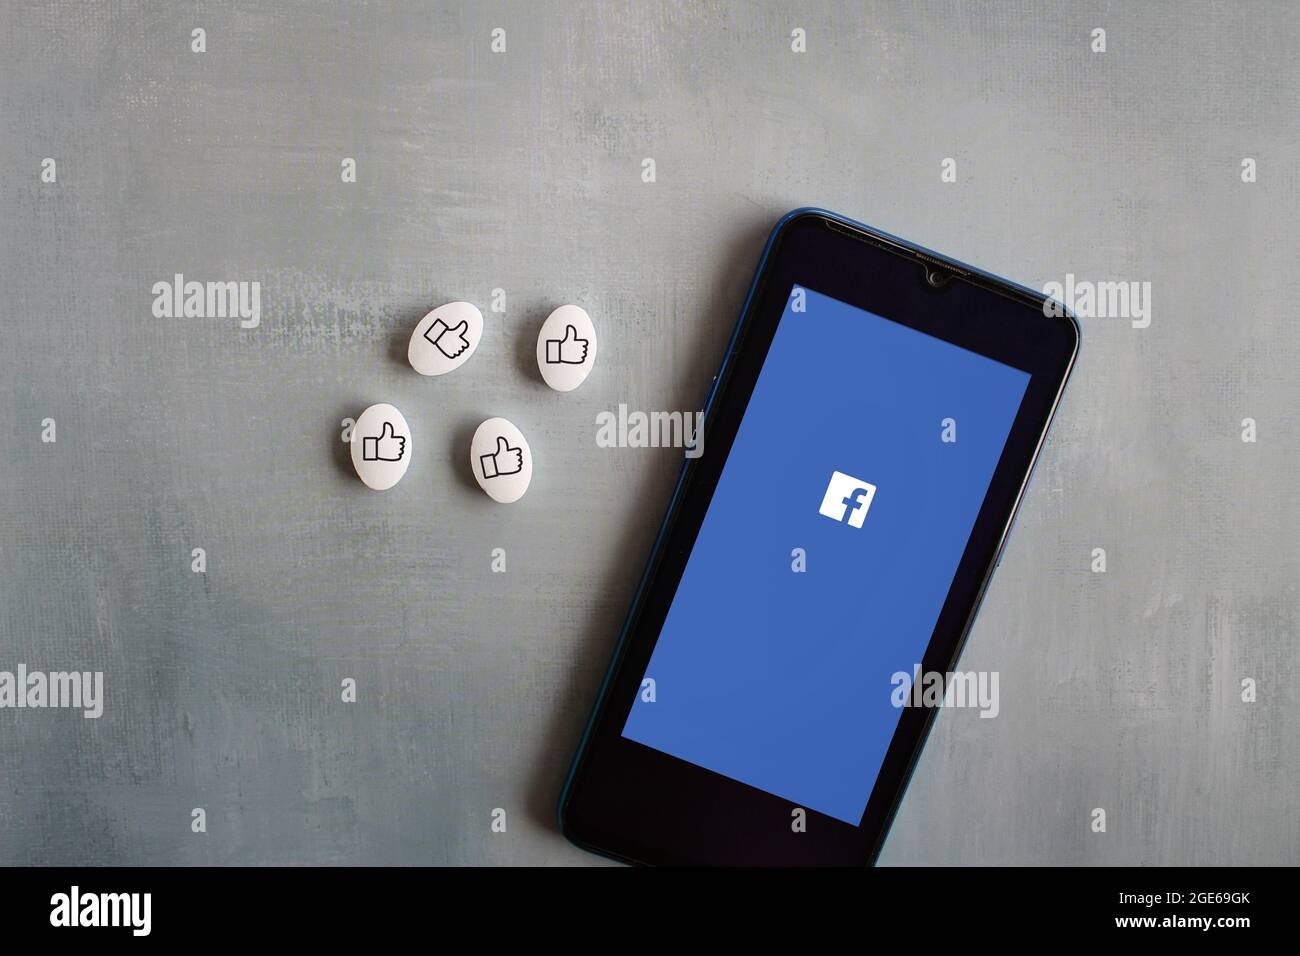 Concetto di dipendenza dai social media. Il logo Facebook sullo smartphone e l'icona dei pollici sulla capsula bianca delle pillole. Foto Stock